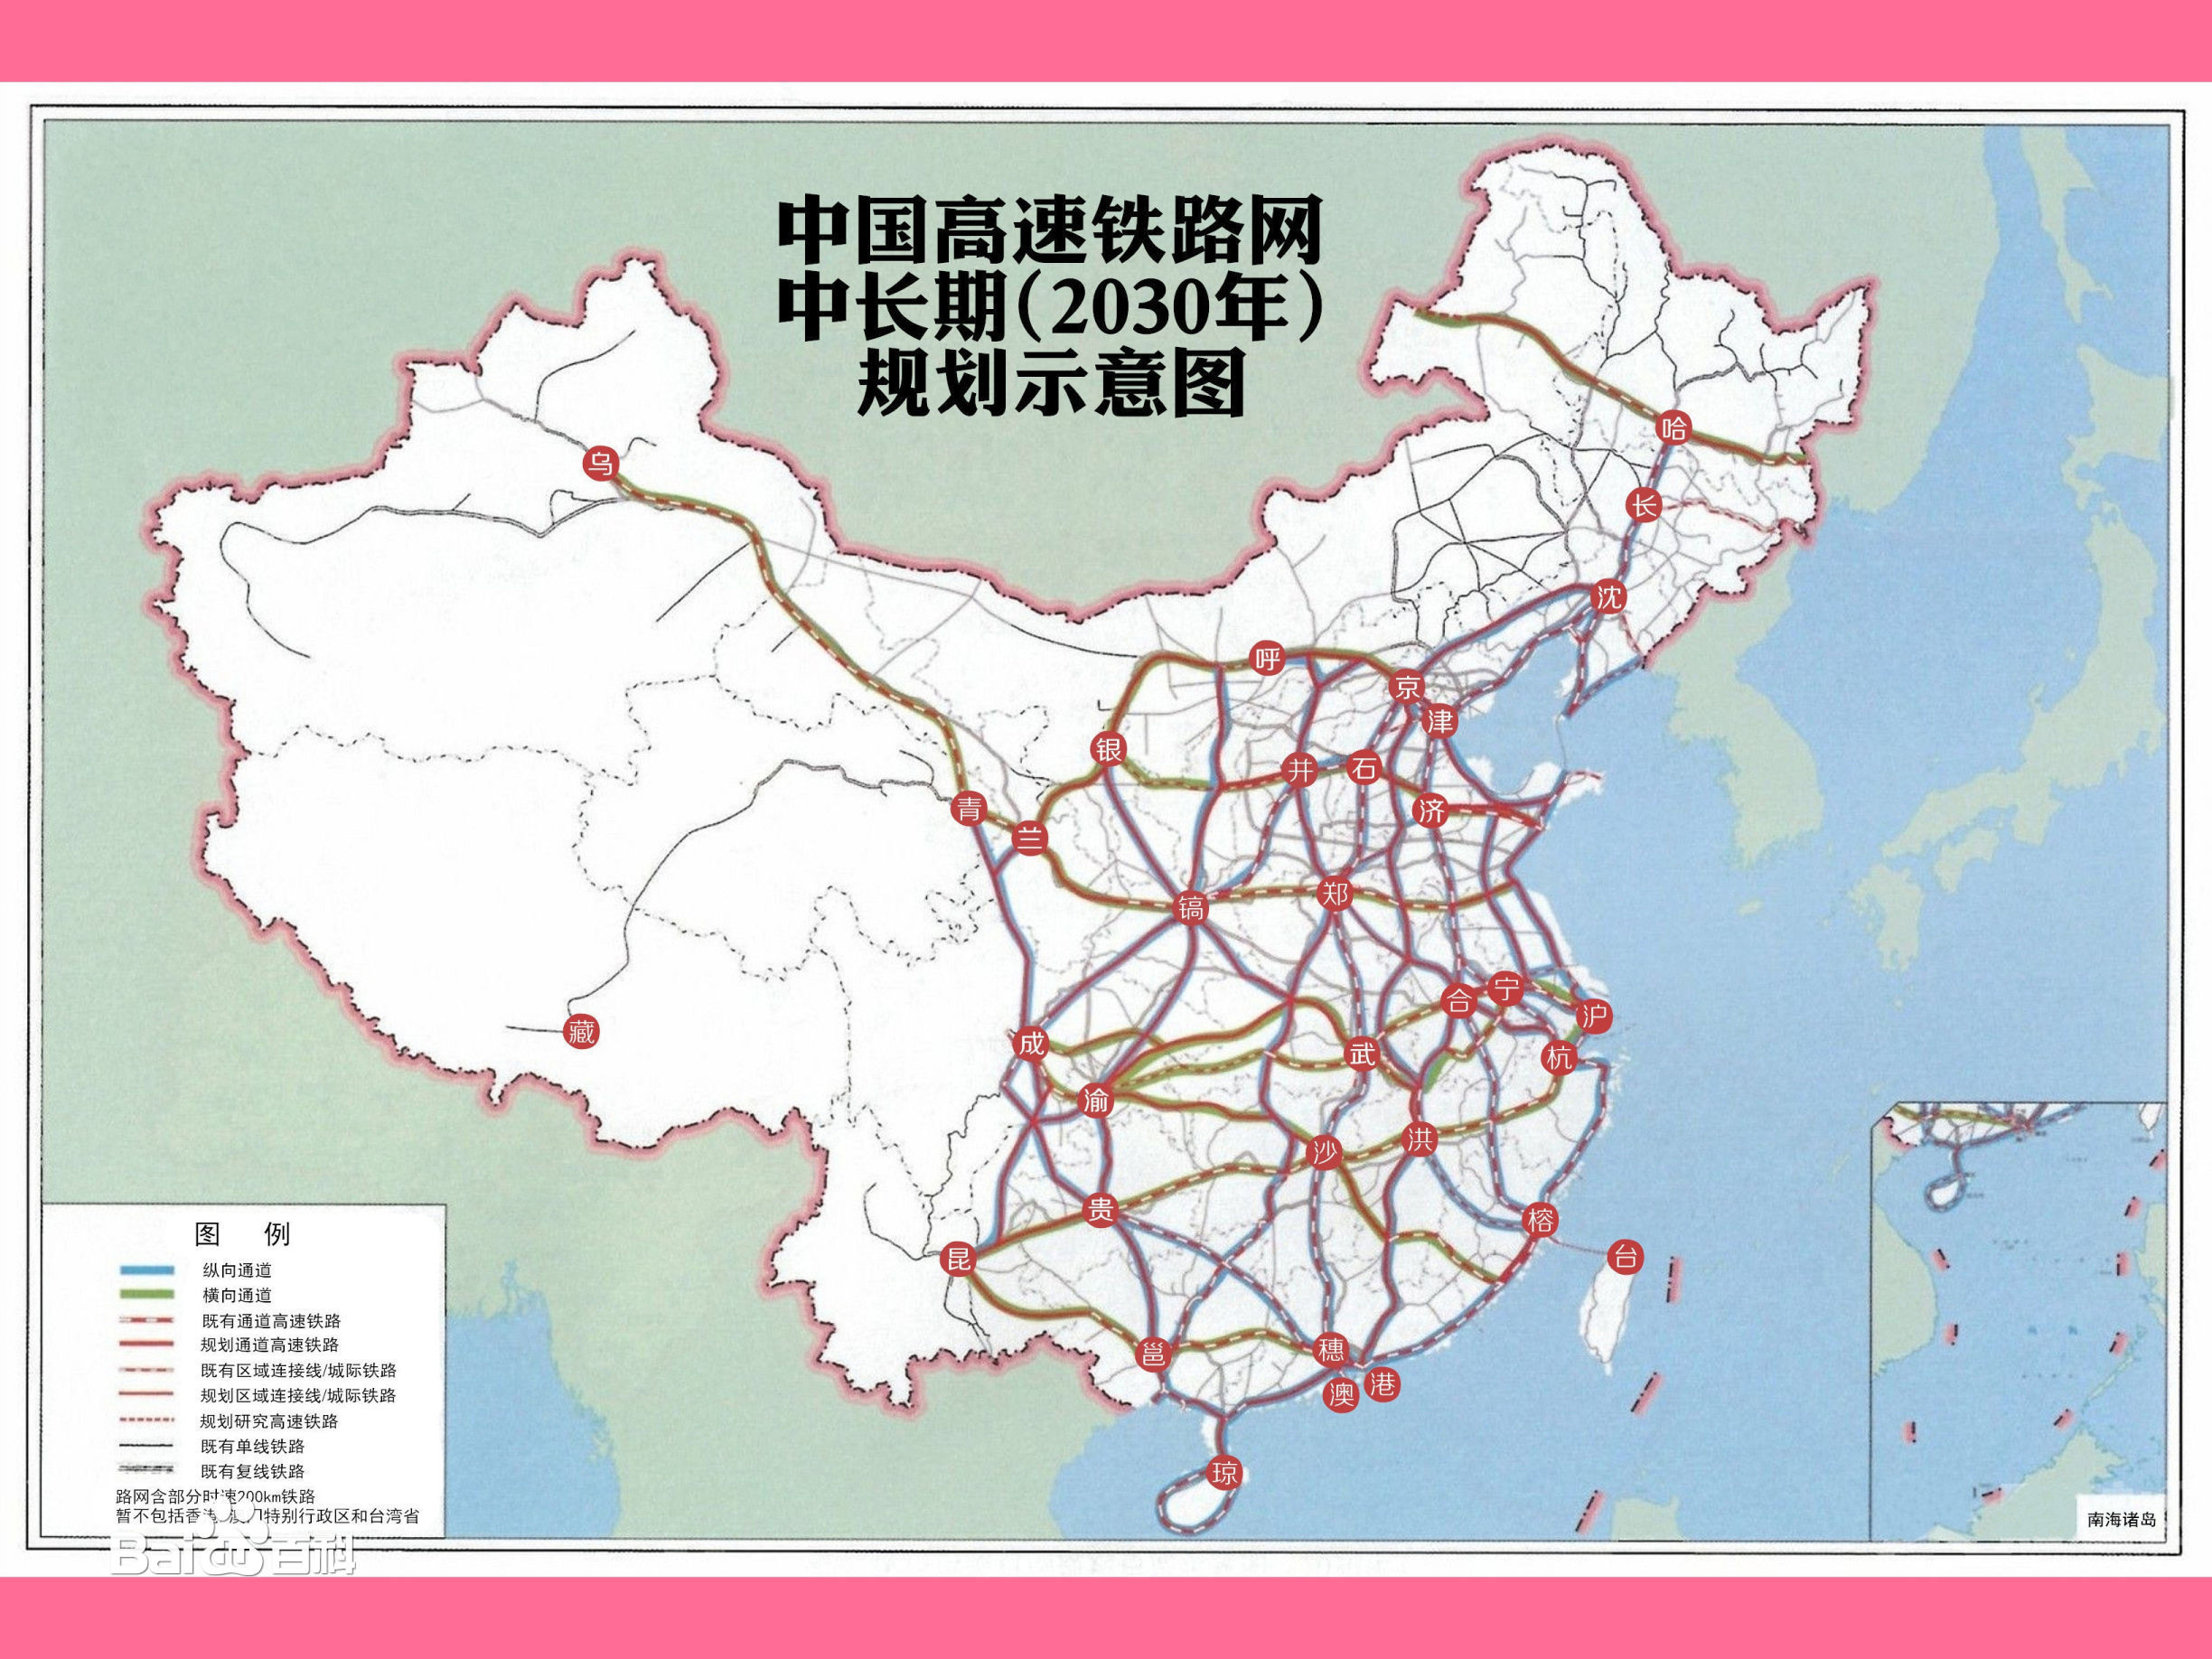 快鐵網被網民篡改為高鐵網，只取消川藏鐵路